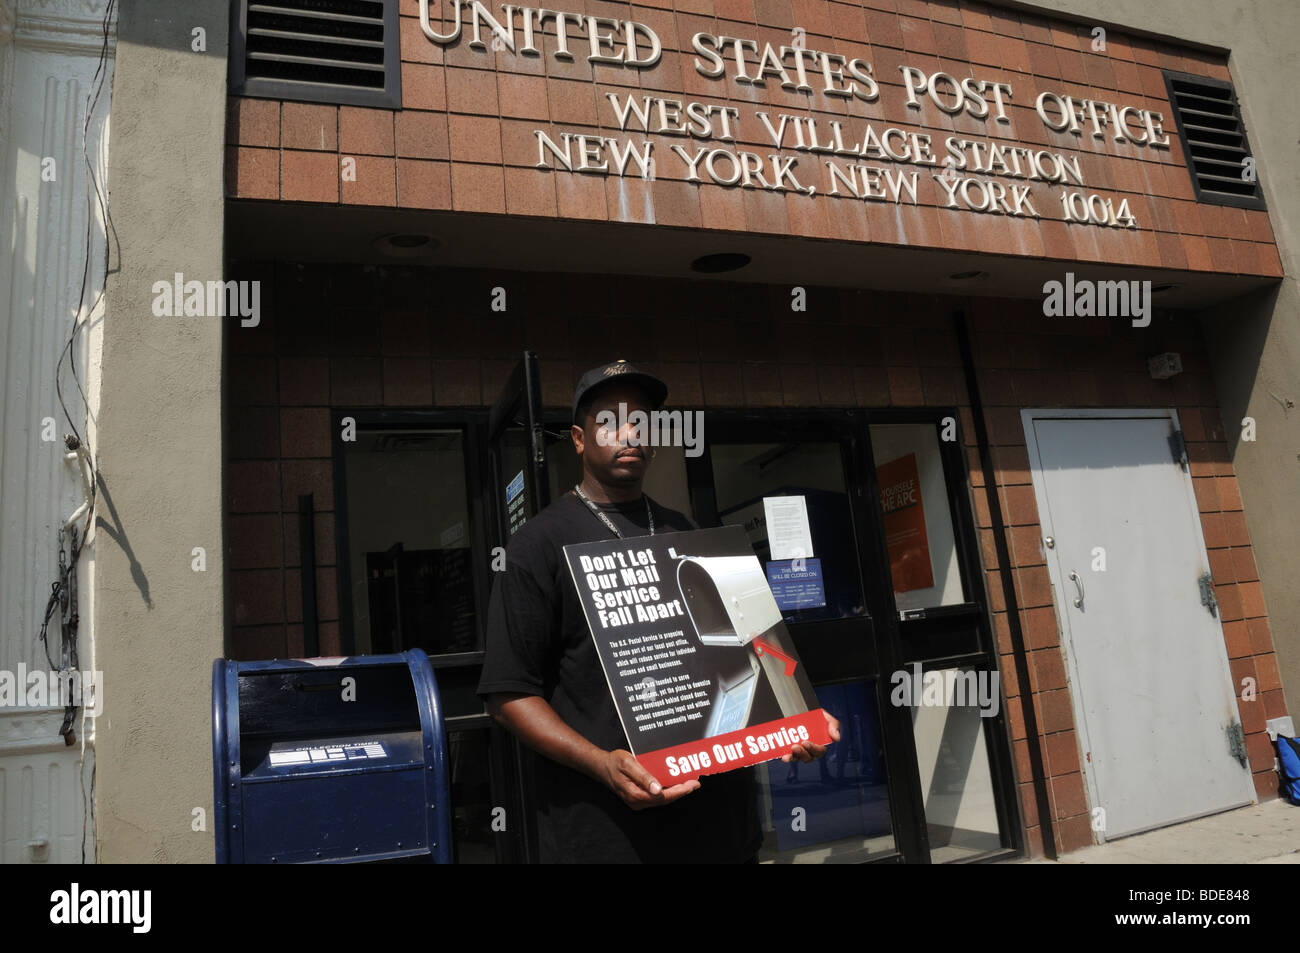 Un travailleur des services postaux à Greenwich Village proteste contre la possible fermeture de 14 bureaux de poste dans la ville de New York. Banque D'Images